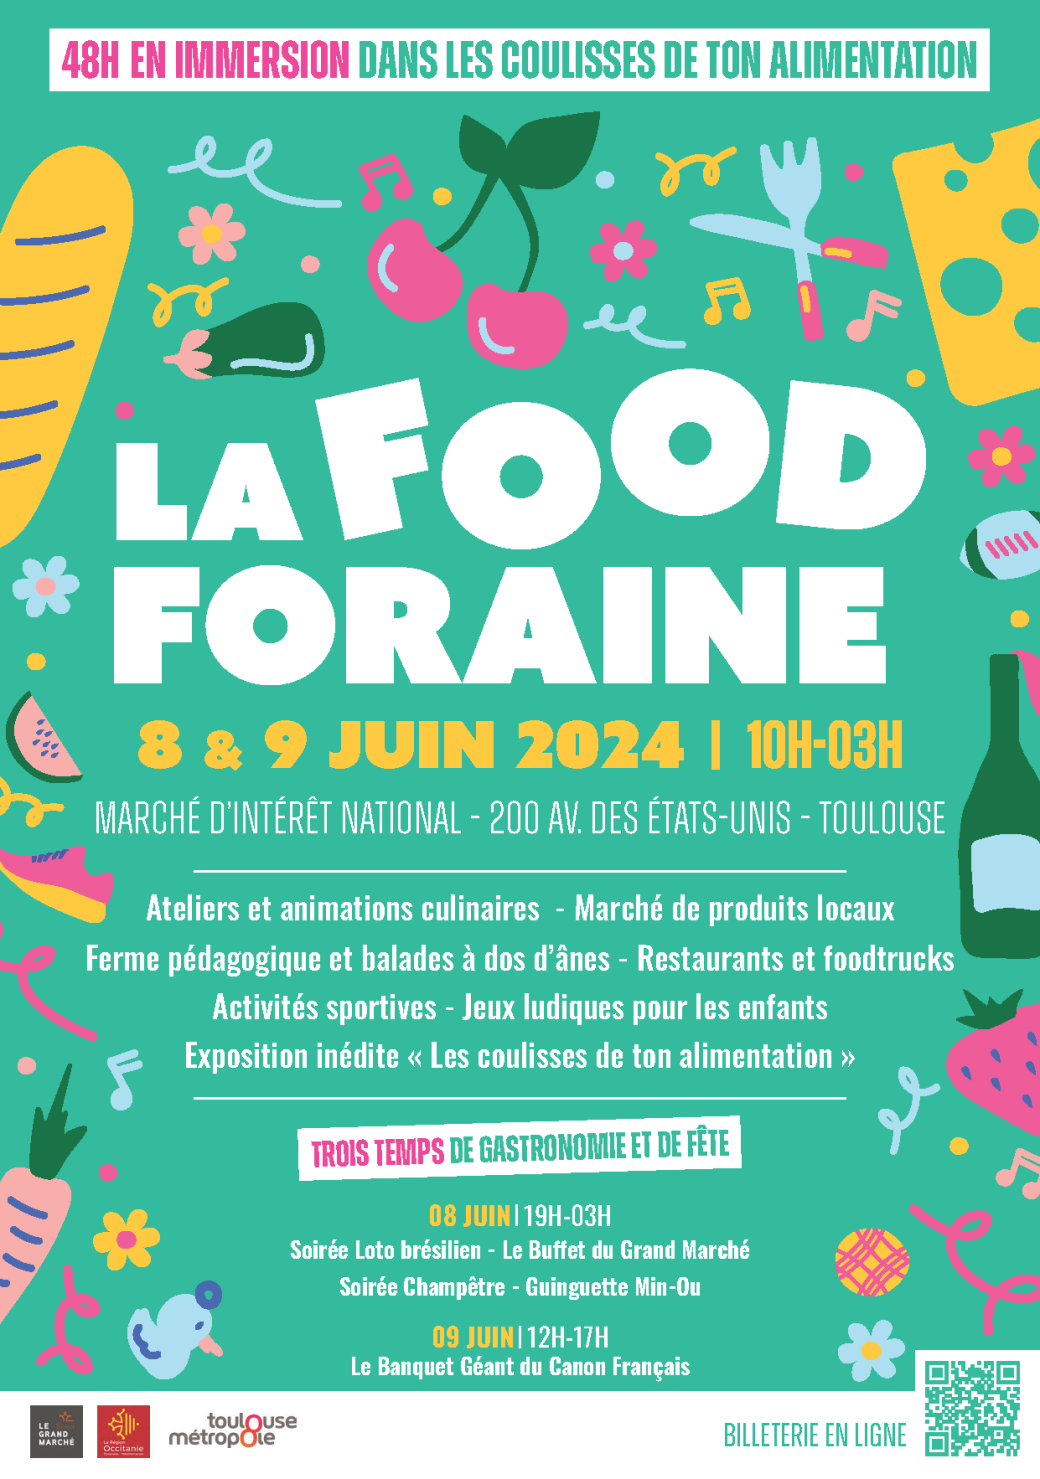 L'affiche de la Food Foraine